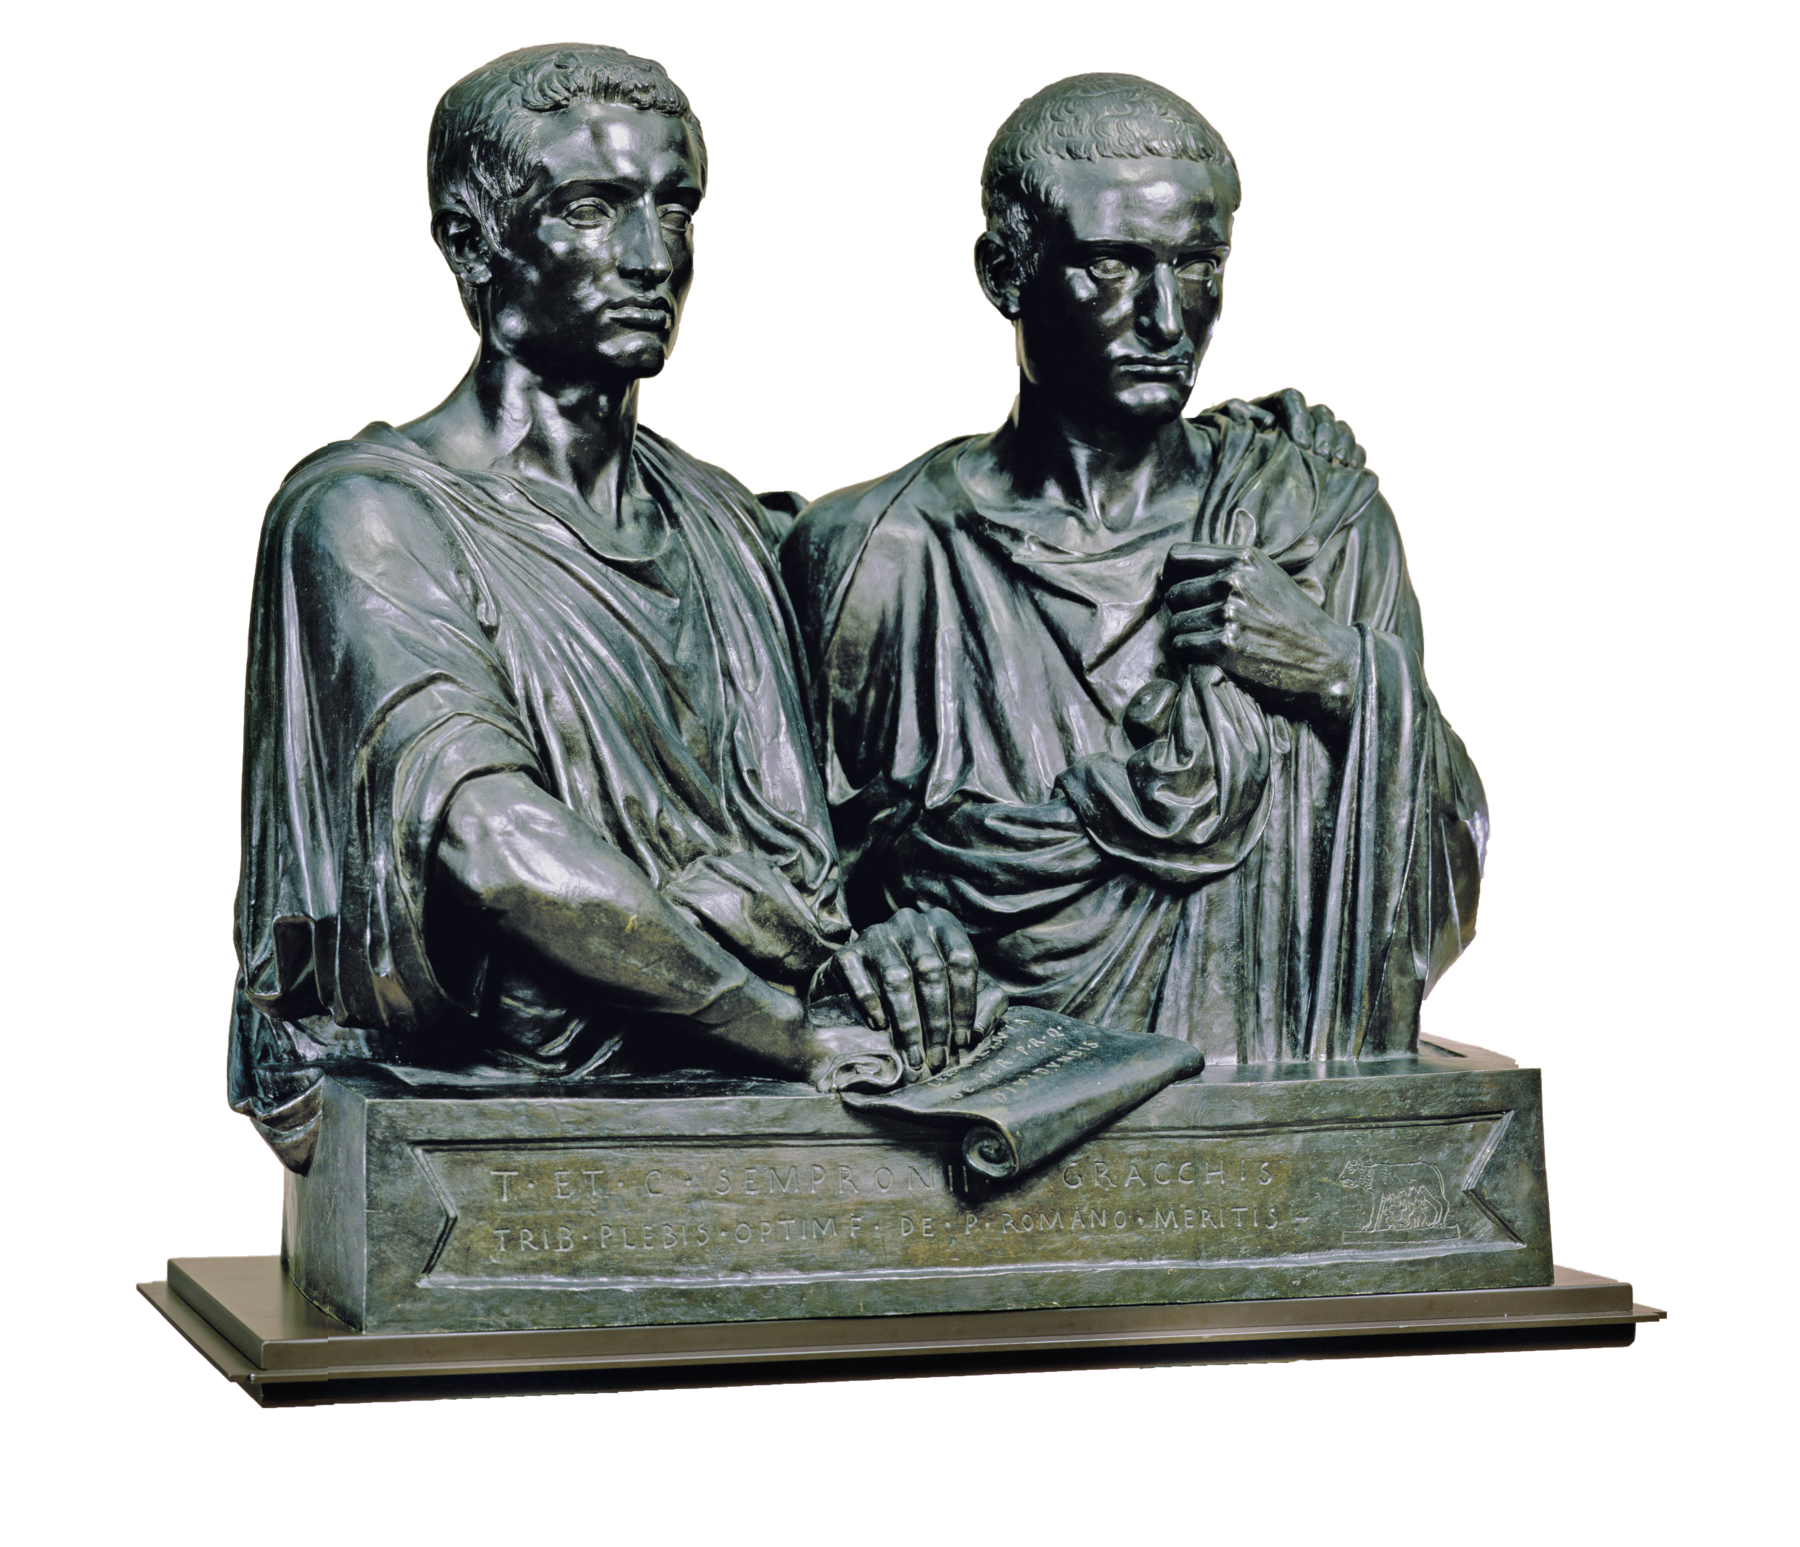 Escultura. Busto de dois homens, lado a lado, ambos com cabelos lisos e curtos, vestindo togas. Os dois apoiam uma das mãos sobre uma folha de papel com textos escritos.